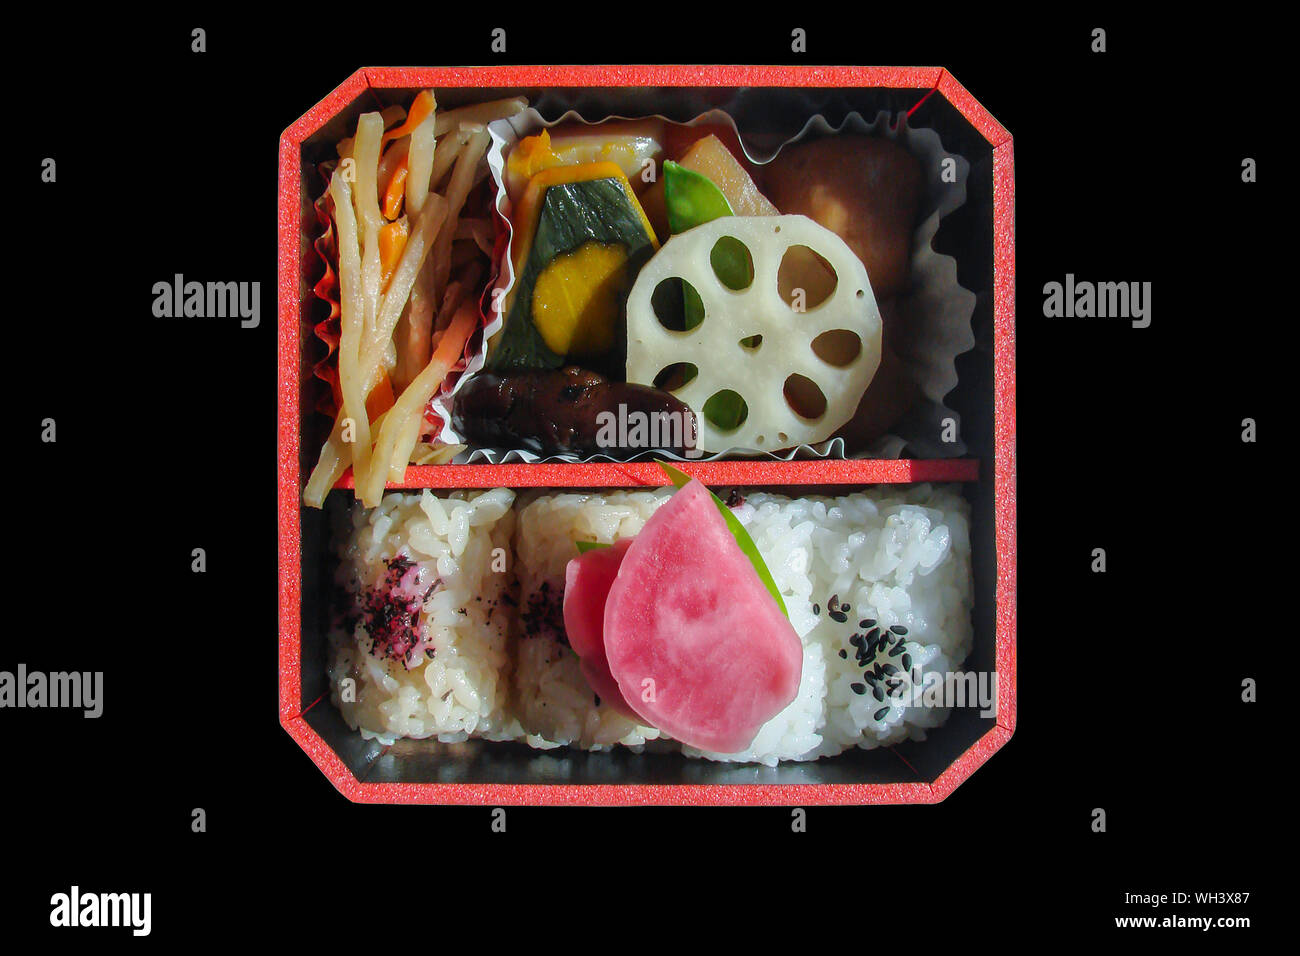 Vue de dessus d'un carré des bento japonais avec du riz et légumes, isolé sur fond noir Banque D'Images